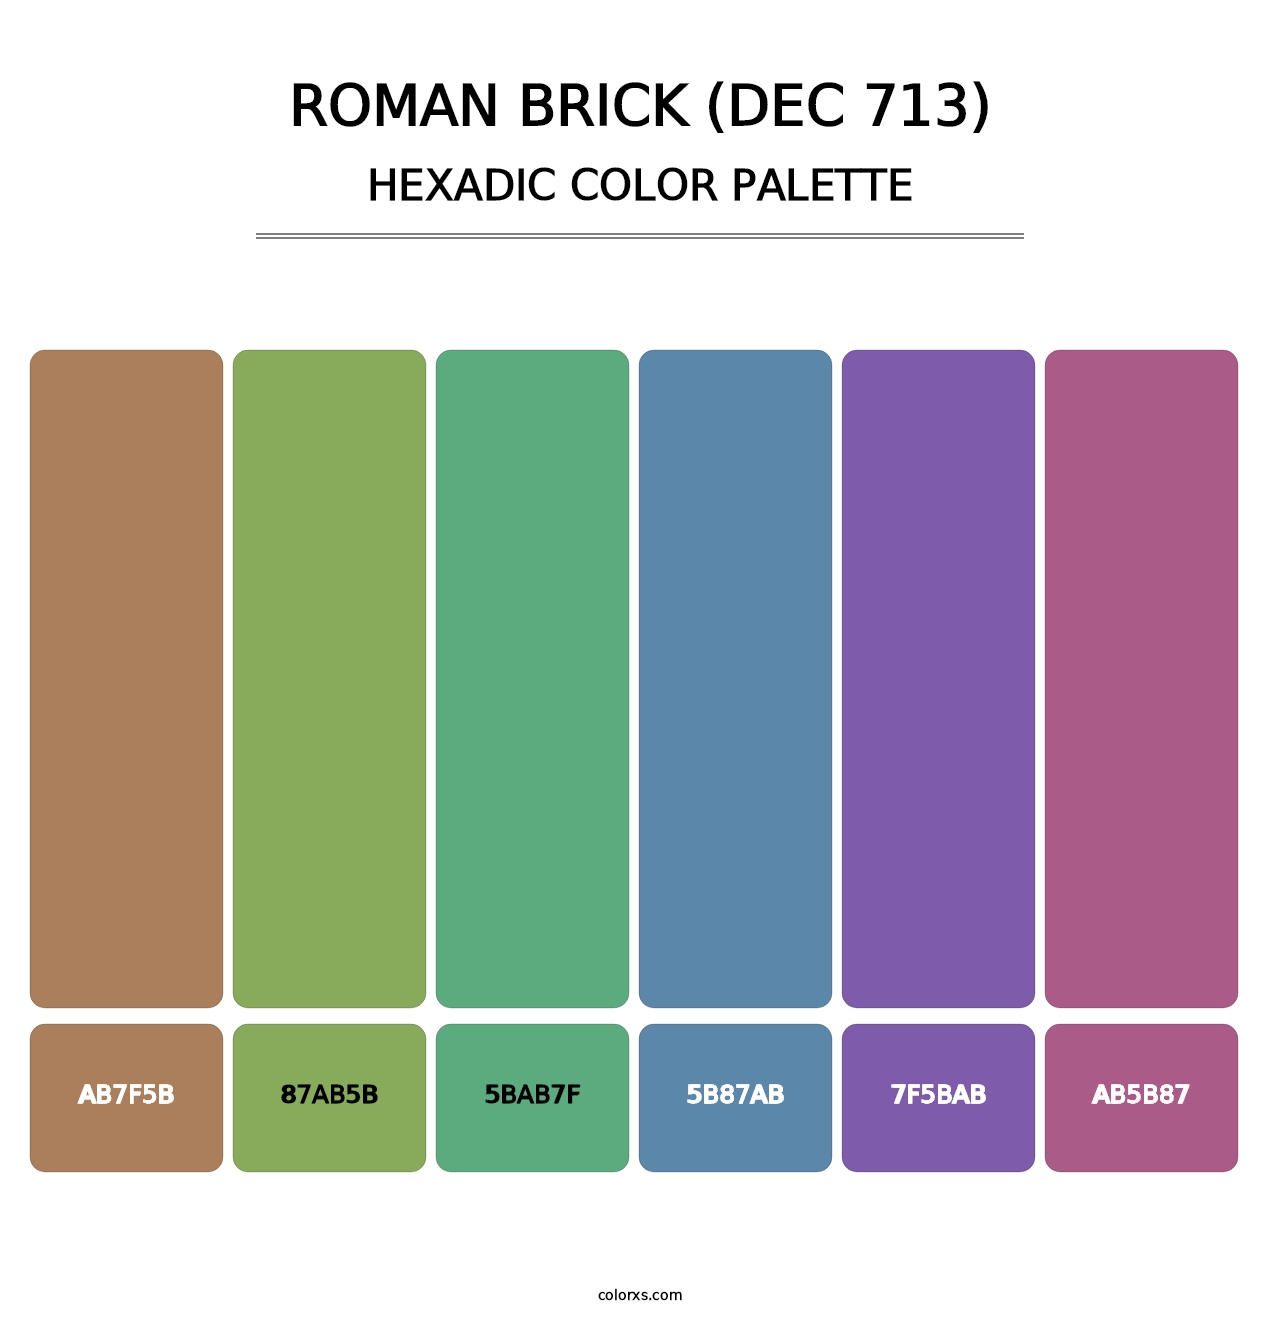 Roman Brick (DEC 713) - Hexadic Color Palette